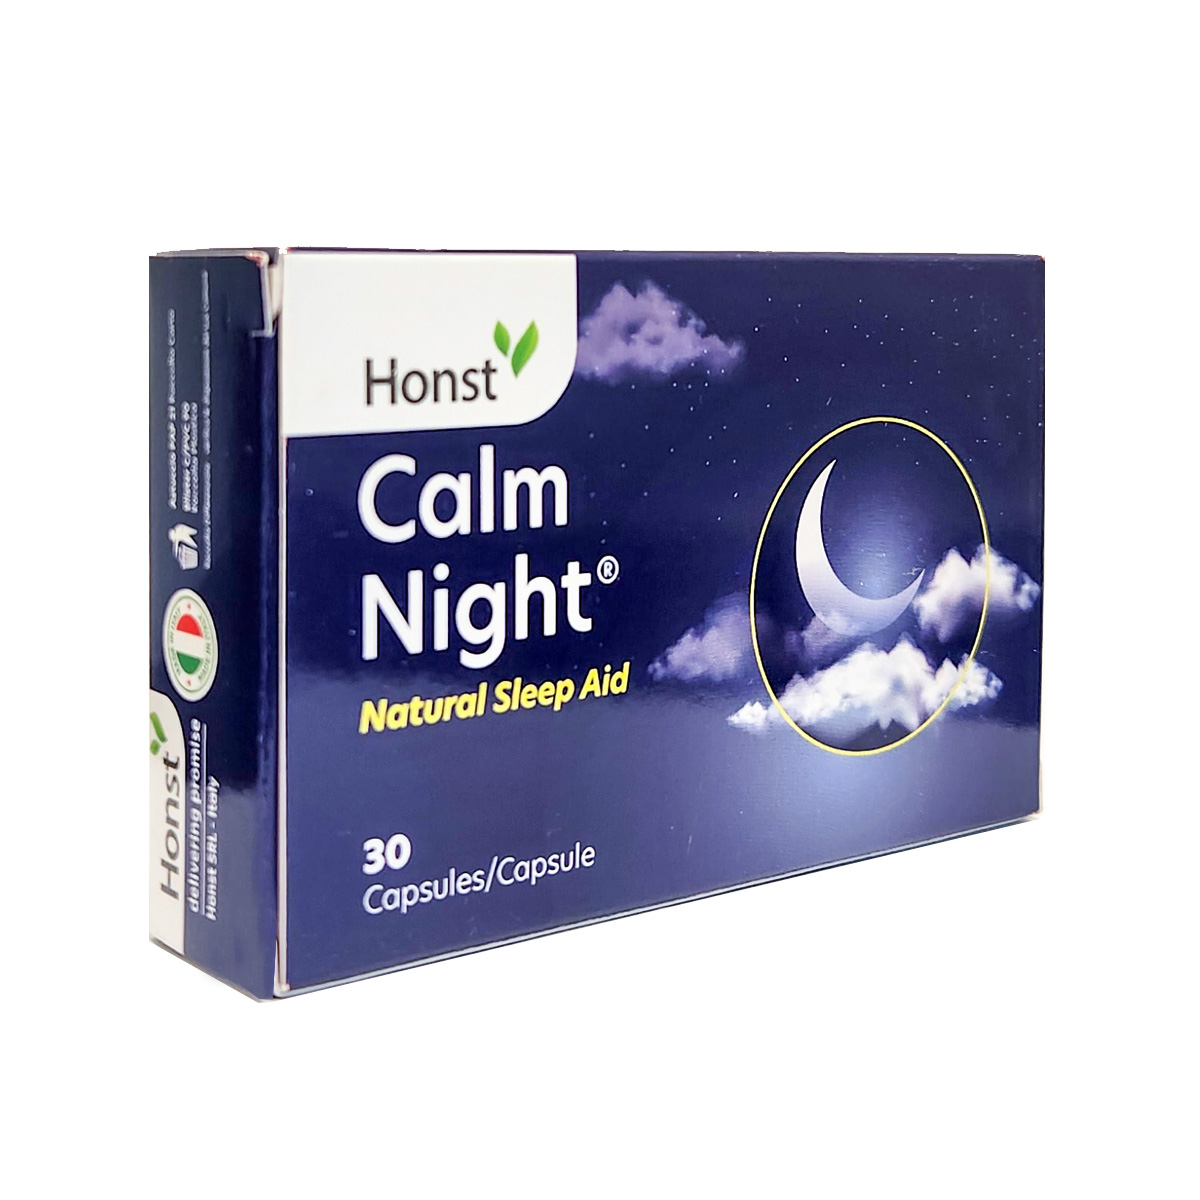 Honst-Calm Night 30 Capsules/Capsule